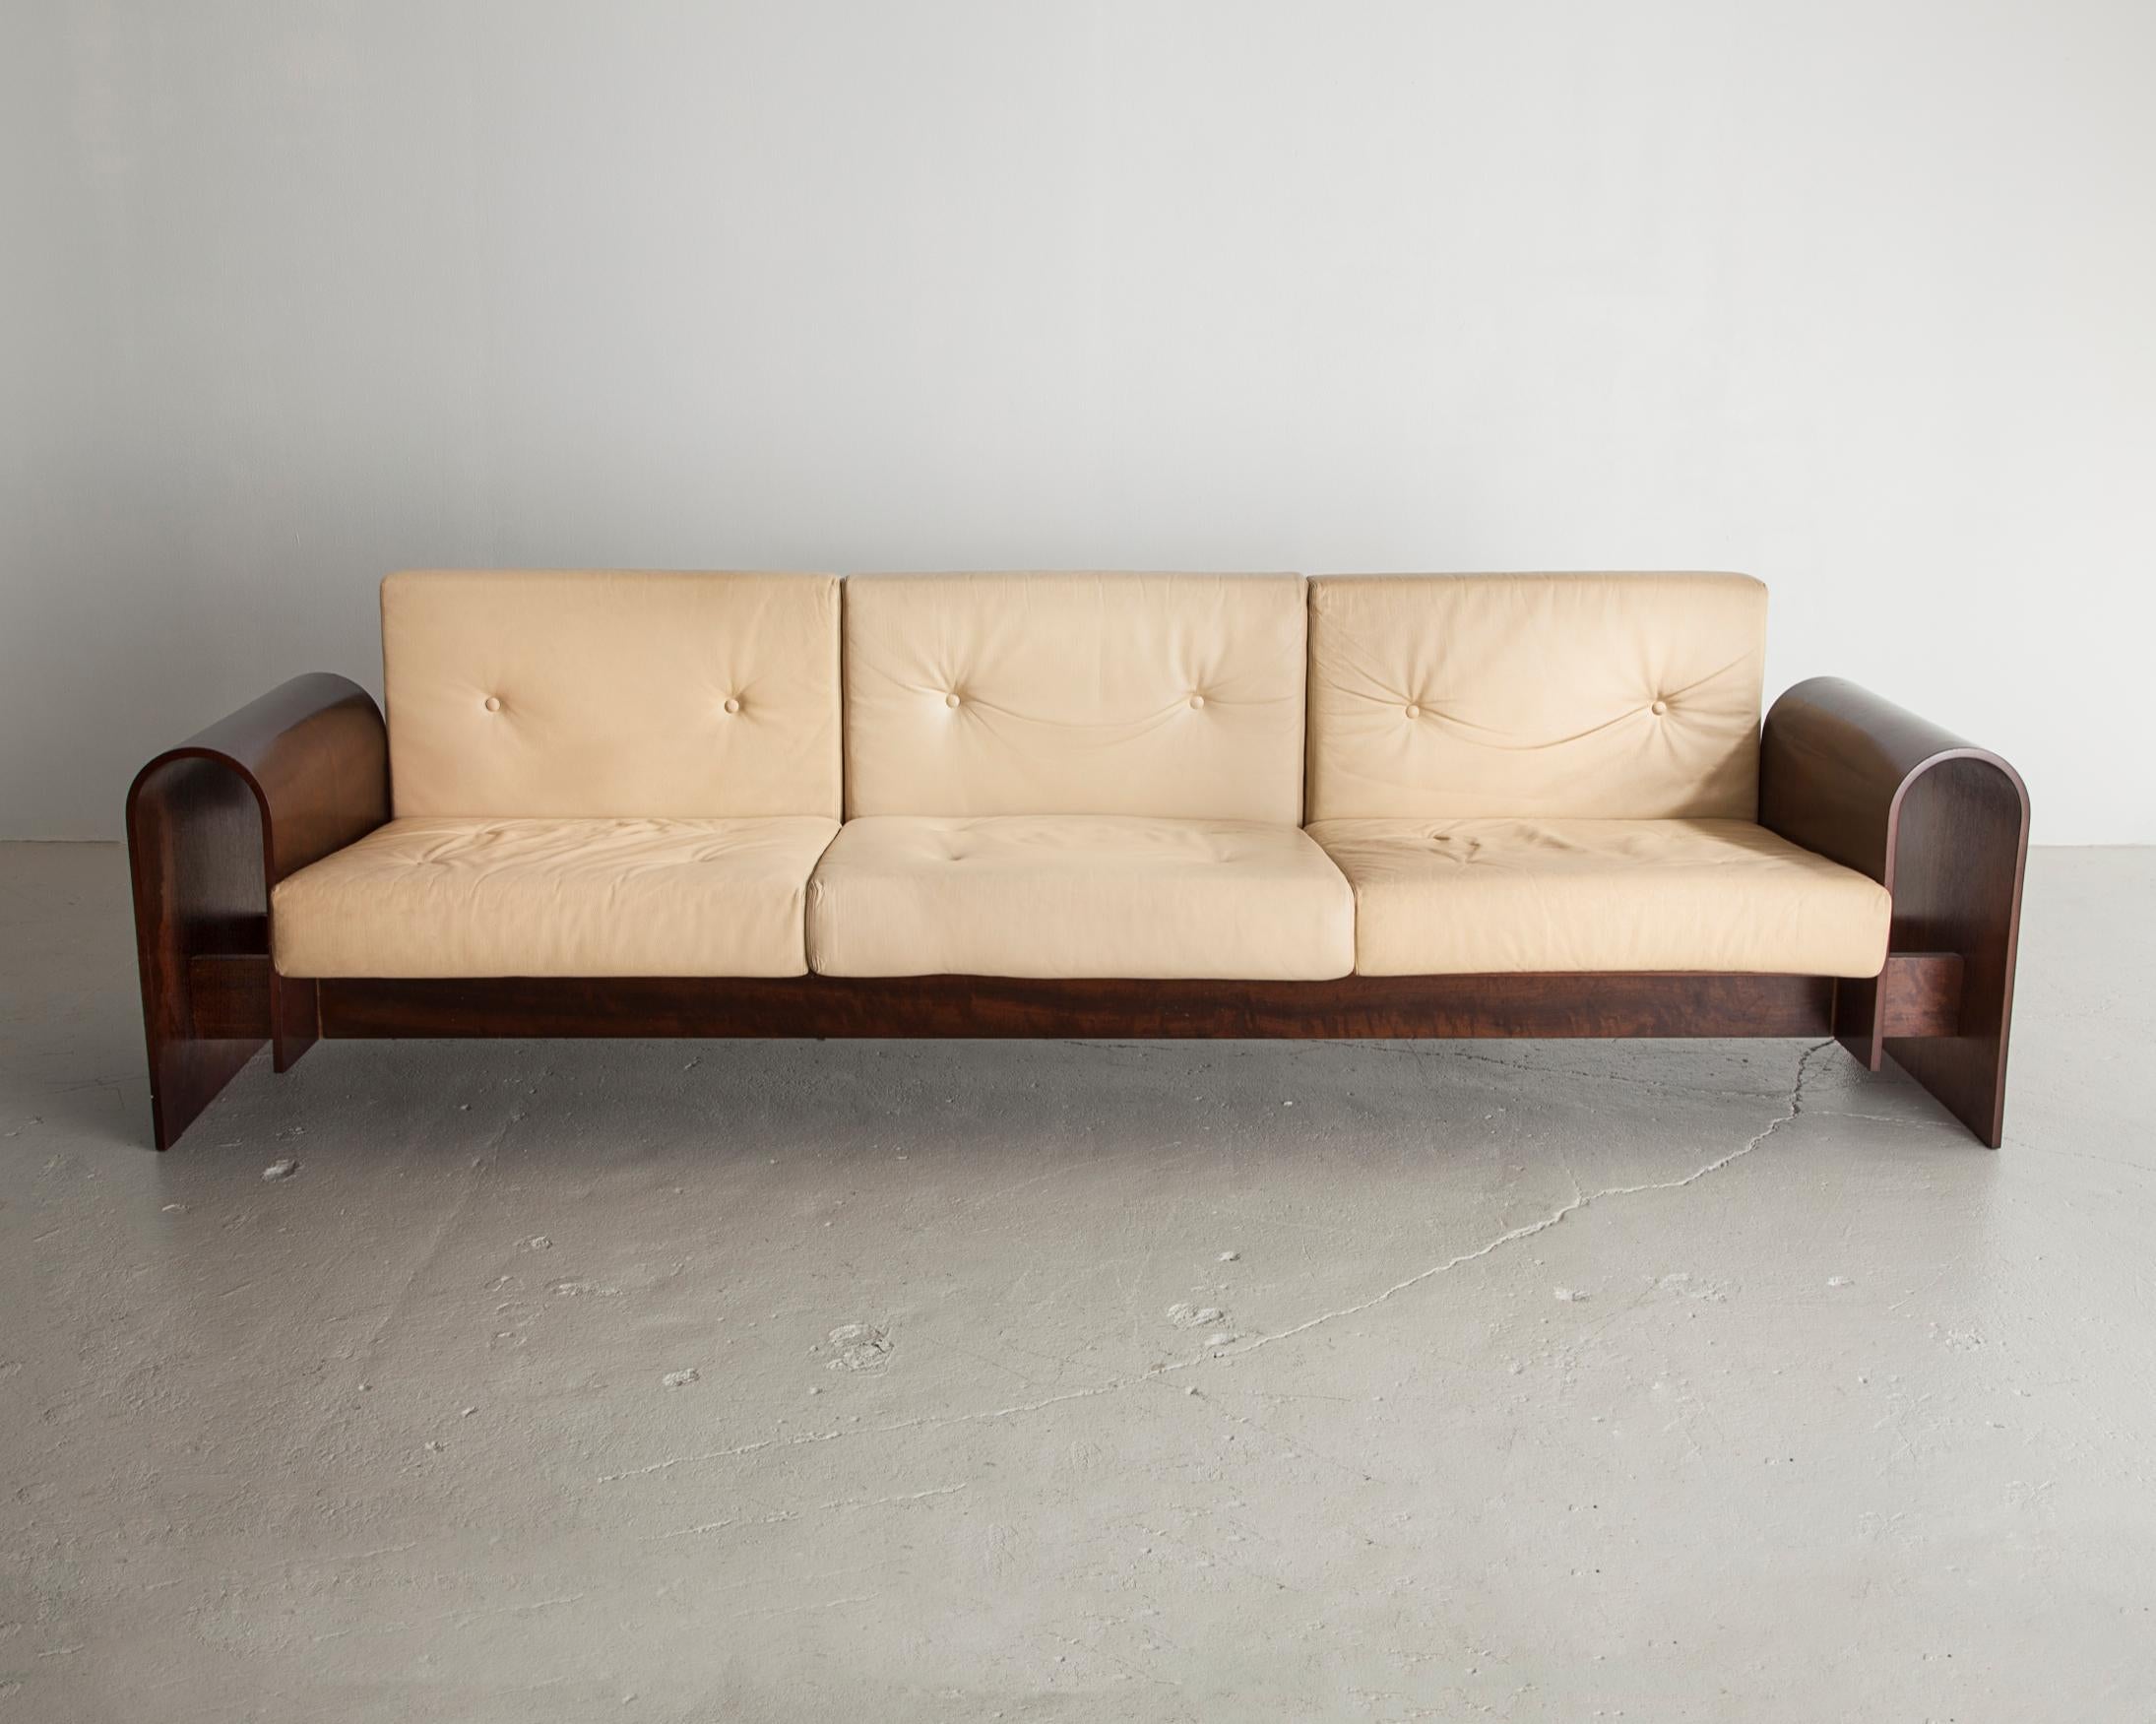 Canapé trois places en placage de bois de rose avec coussins rembourrés. Conçu par Oscar Niemeyer pour l'hôtel SESC, Brésil, 1990.